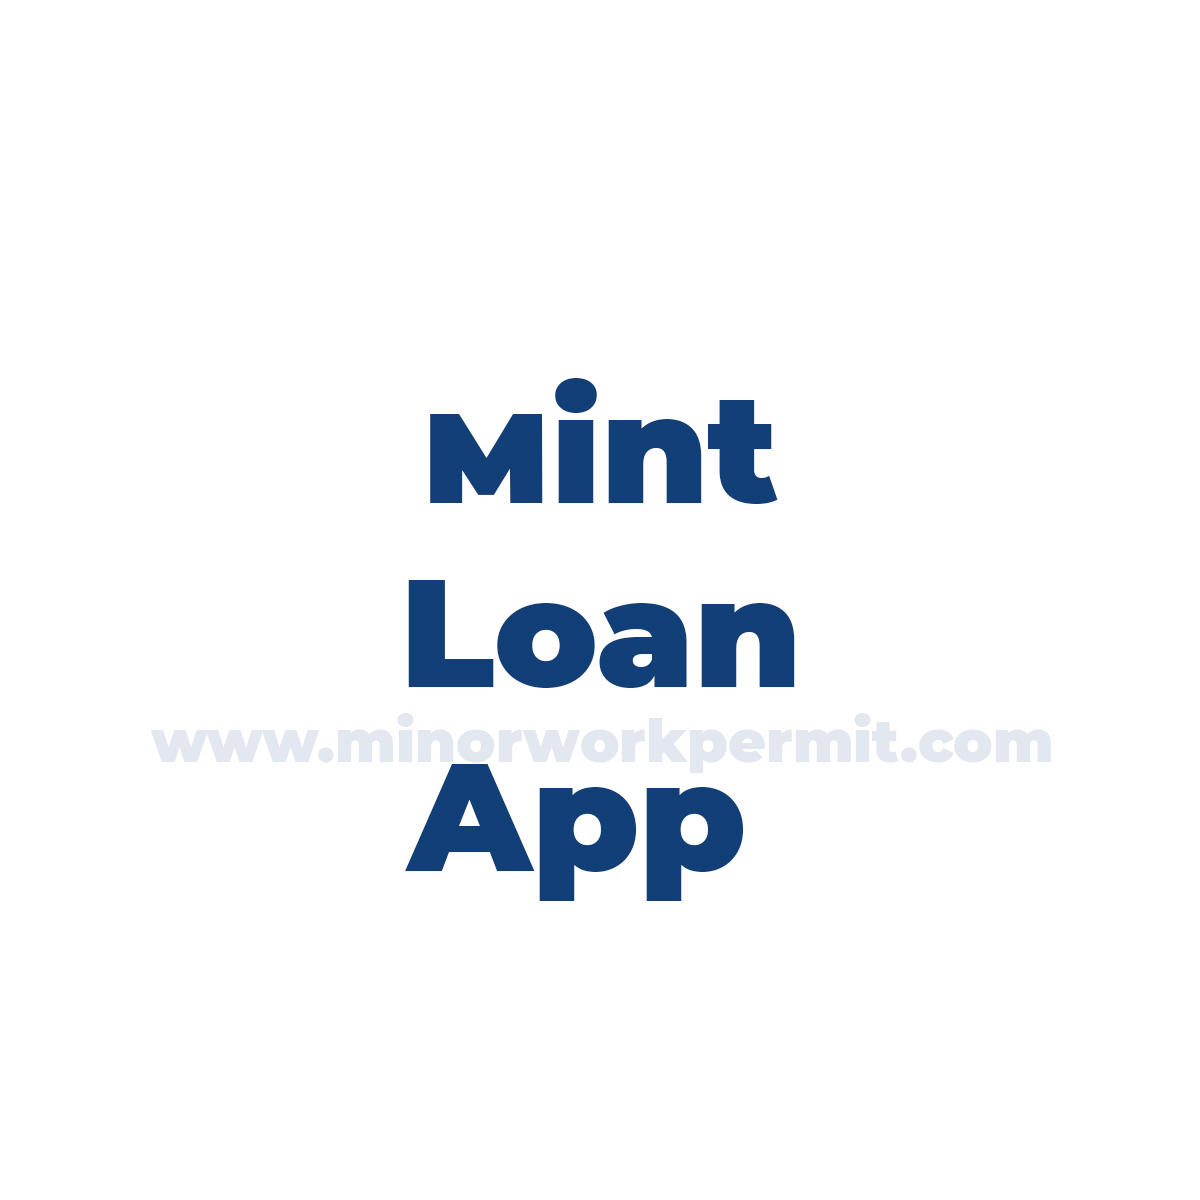 Mint Loan App